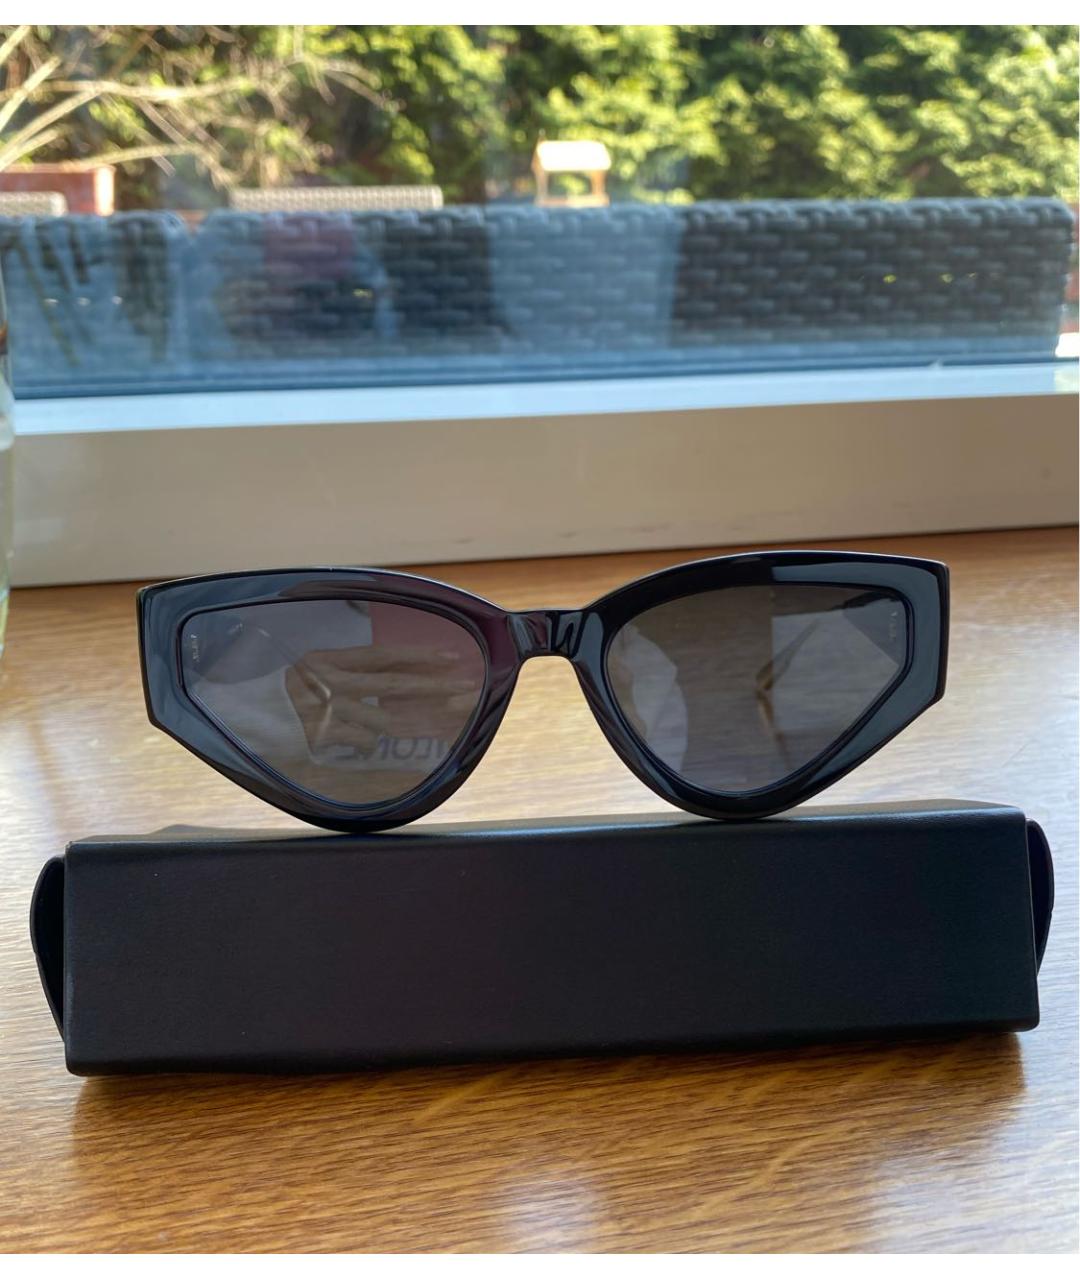 CHRISTIAN DIOR Черные пластиковые солнцезащитные очки, фото 6